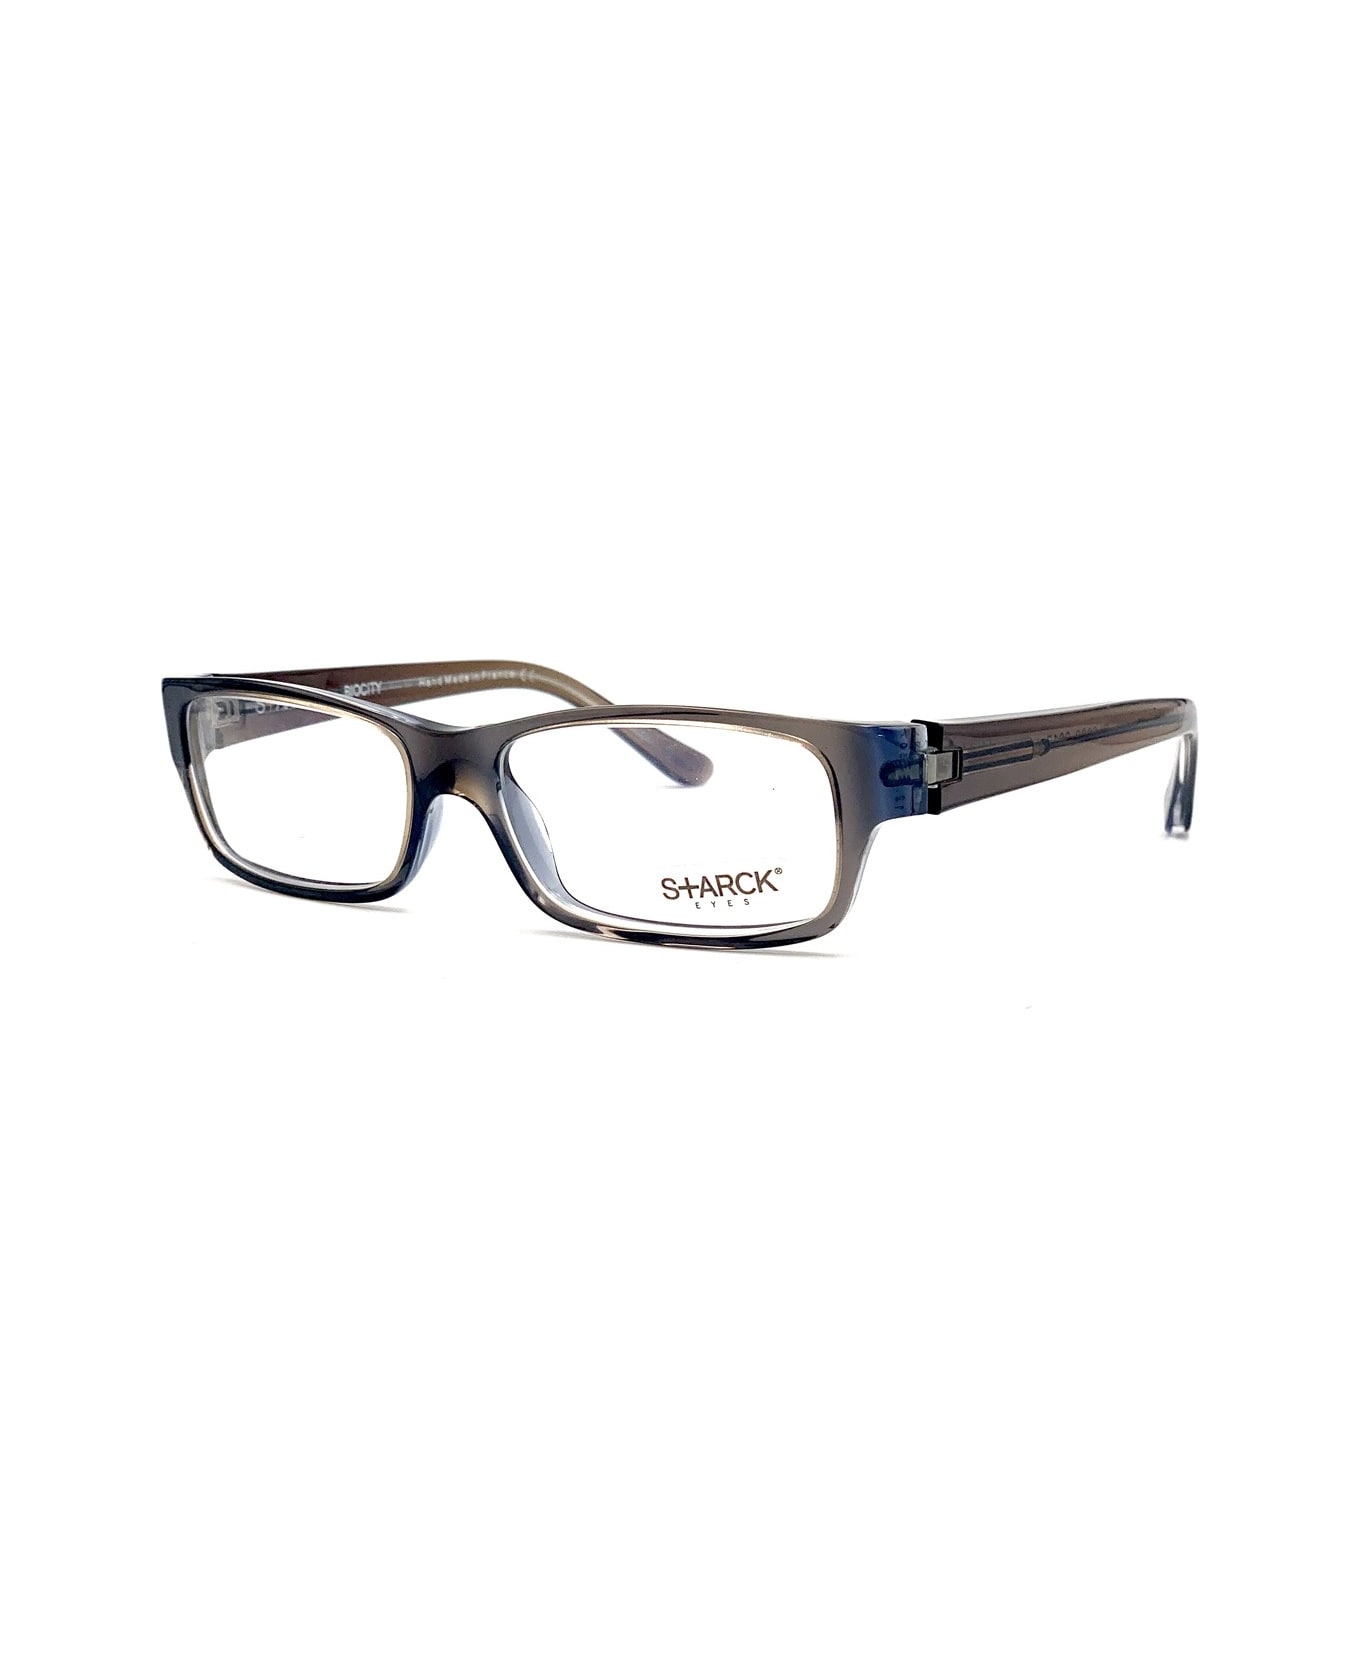 Philippe Starck Pl 0809 Glasses - Grigio